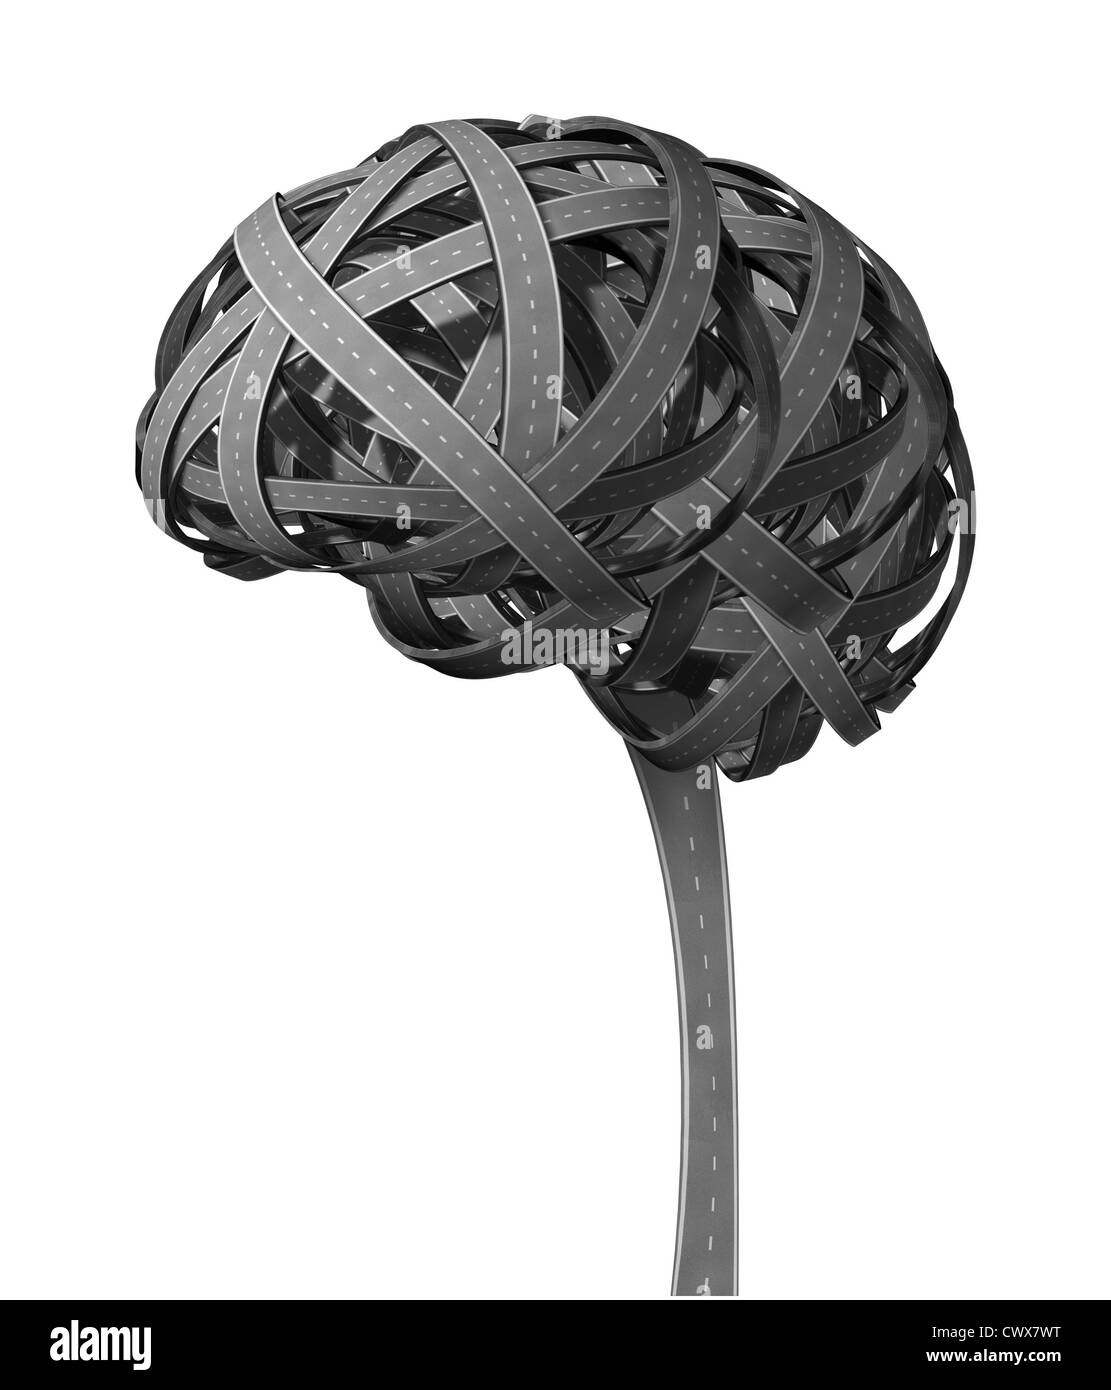 Menschliche Gehirn Demenz-Konzept mit verschlungenen Straßen in der Form der Krankheit krank Kopf mit Probleme denken als kognitive dysfunktional Organ mit einer mentalen Illnes Auswirkungen auf Intelligenz und Gedächtnis-Verlust zugefügt. Stockfoto